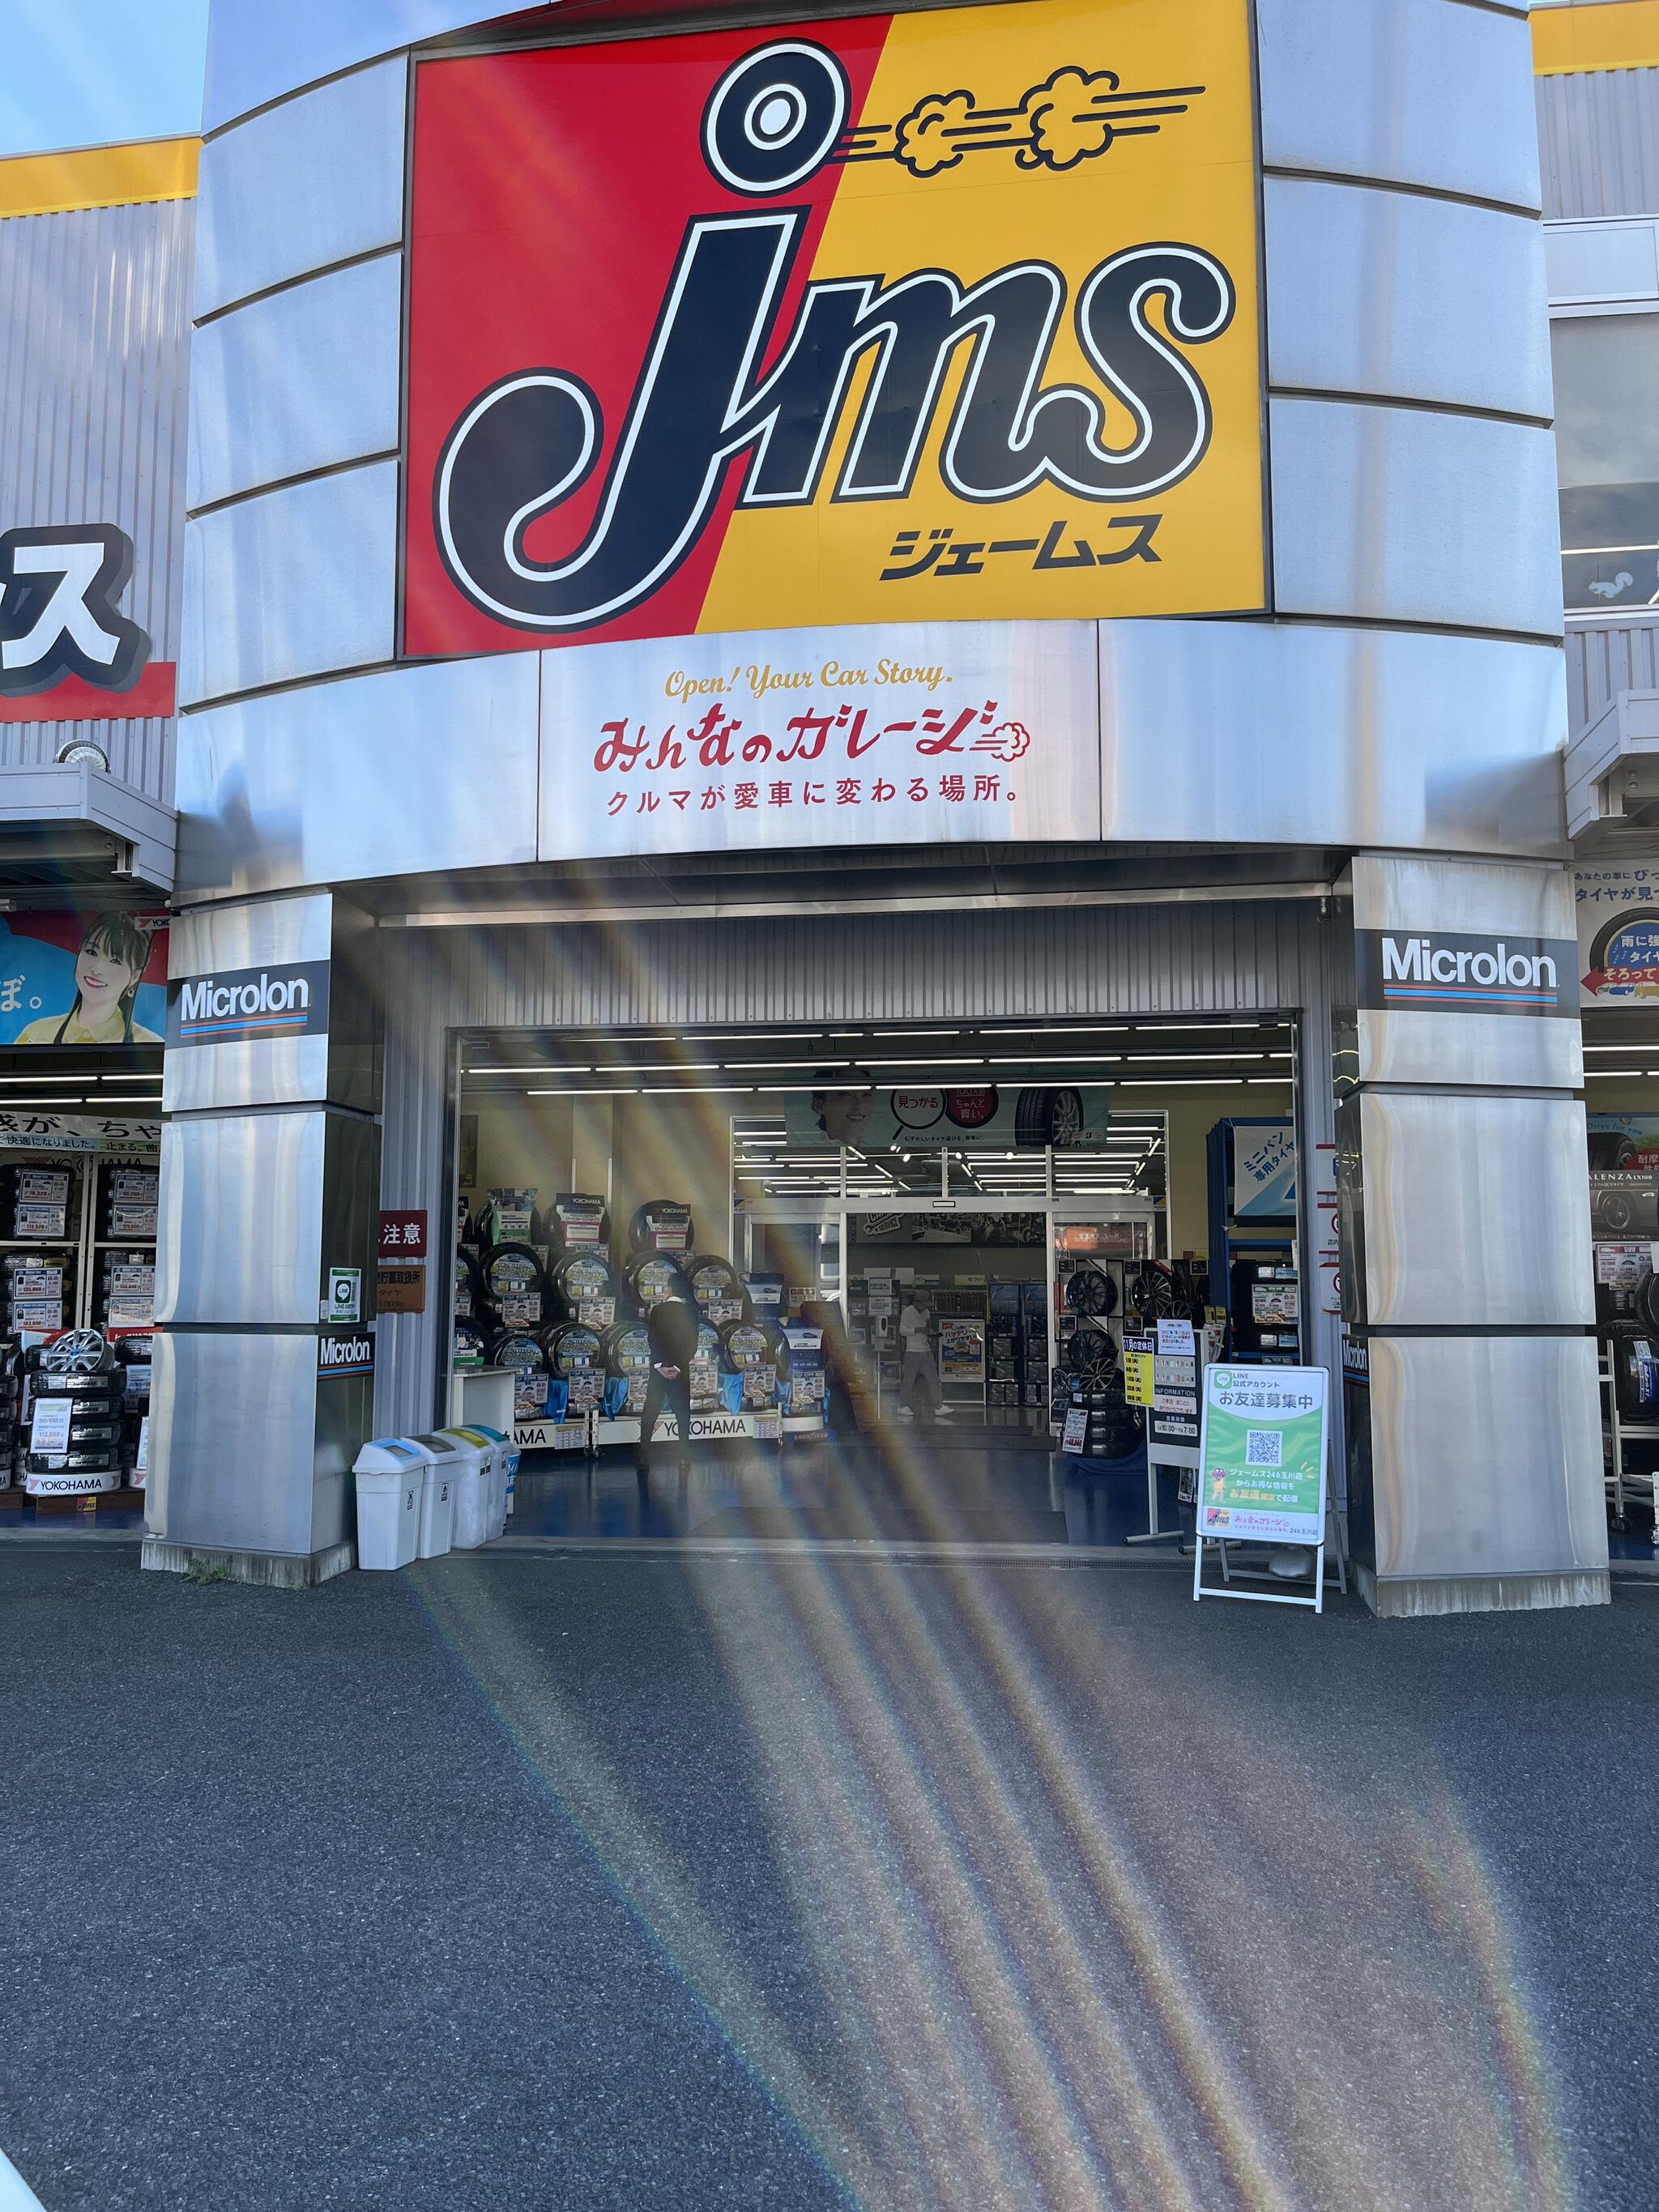 ジェームス 246玉川店 - 川崎市高津区溝口/自動車用品店 | Yahoo!マップ